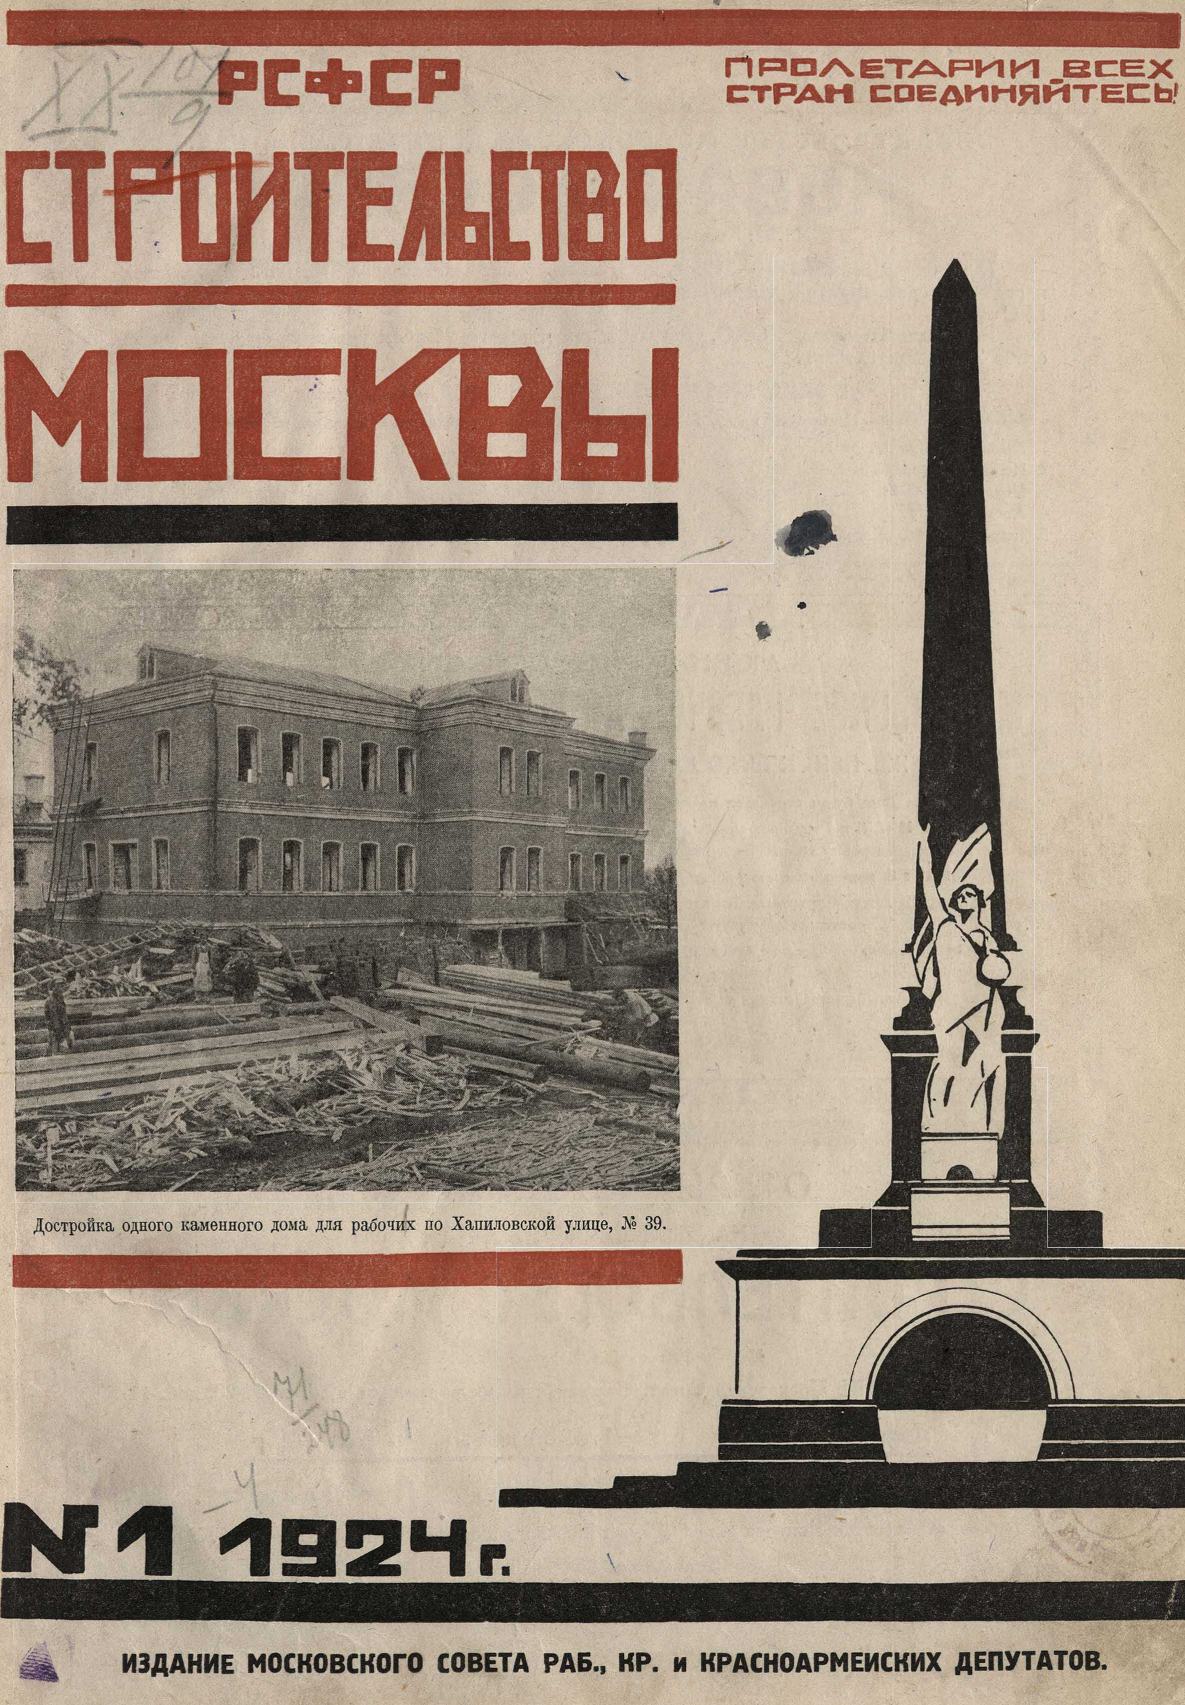 Металл на московском шоссе: история, проблемы и перспективы